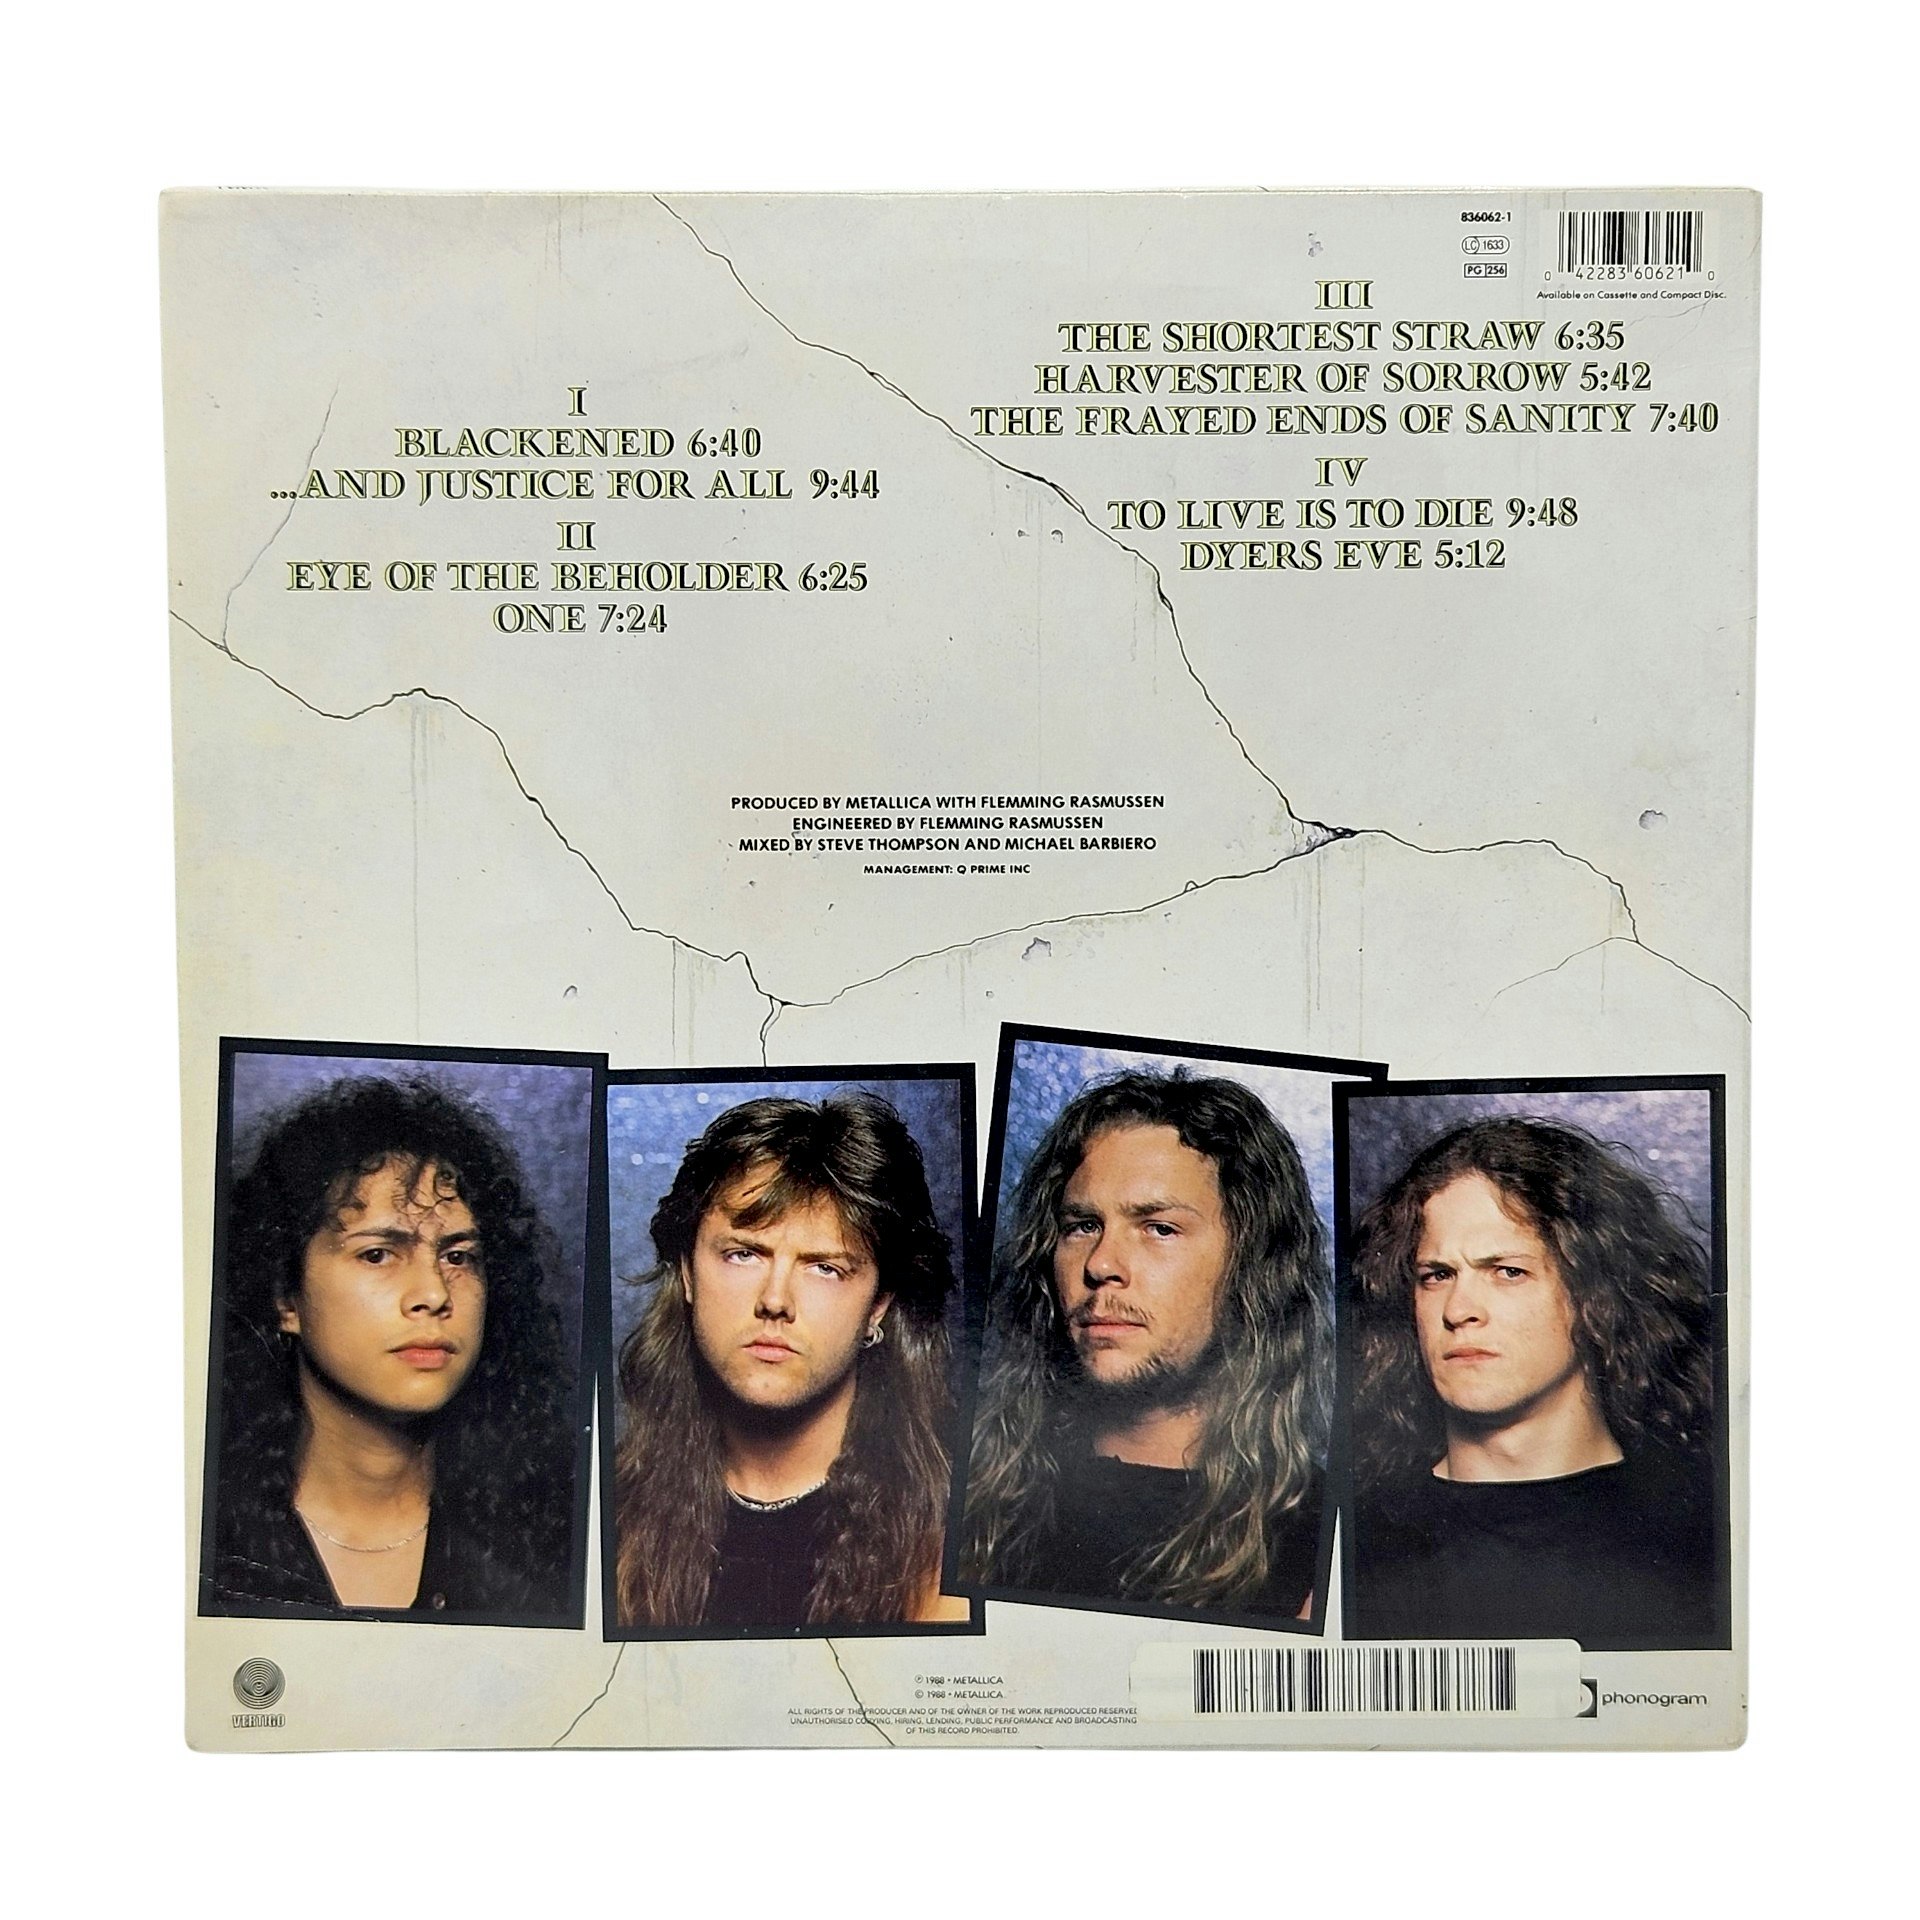 Metallica y justicia para todos, vinilo 2 LP, 1988 - Tigris